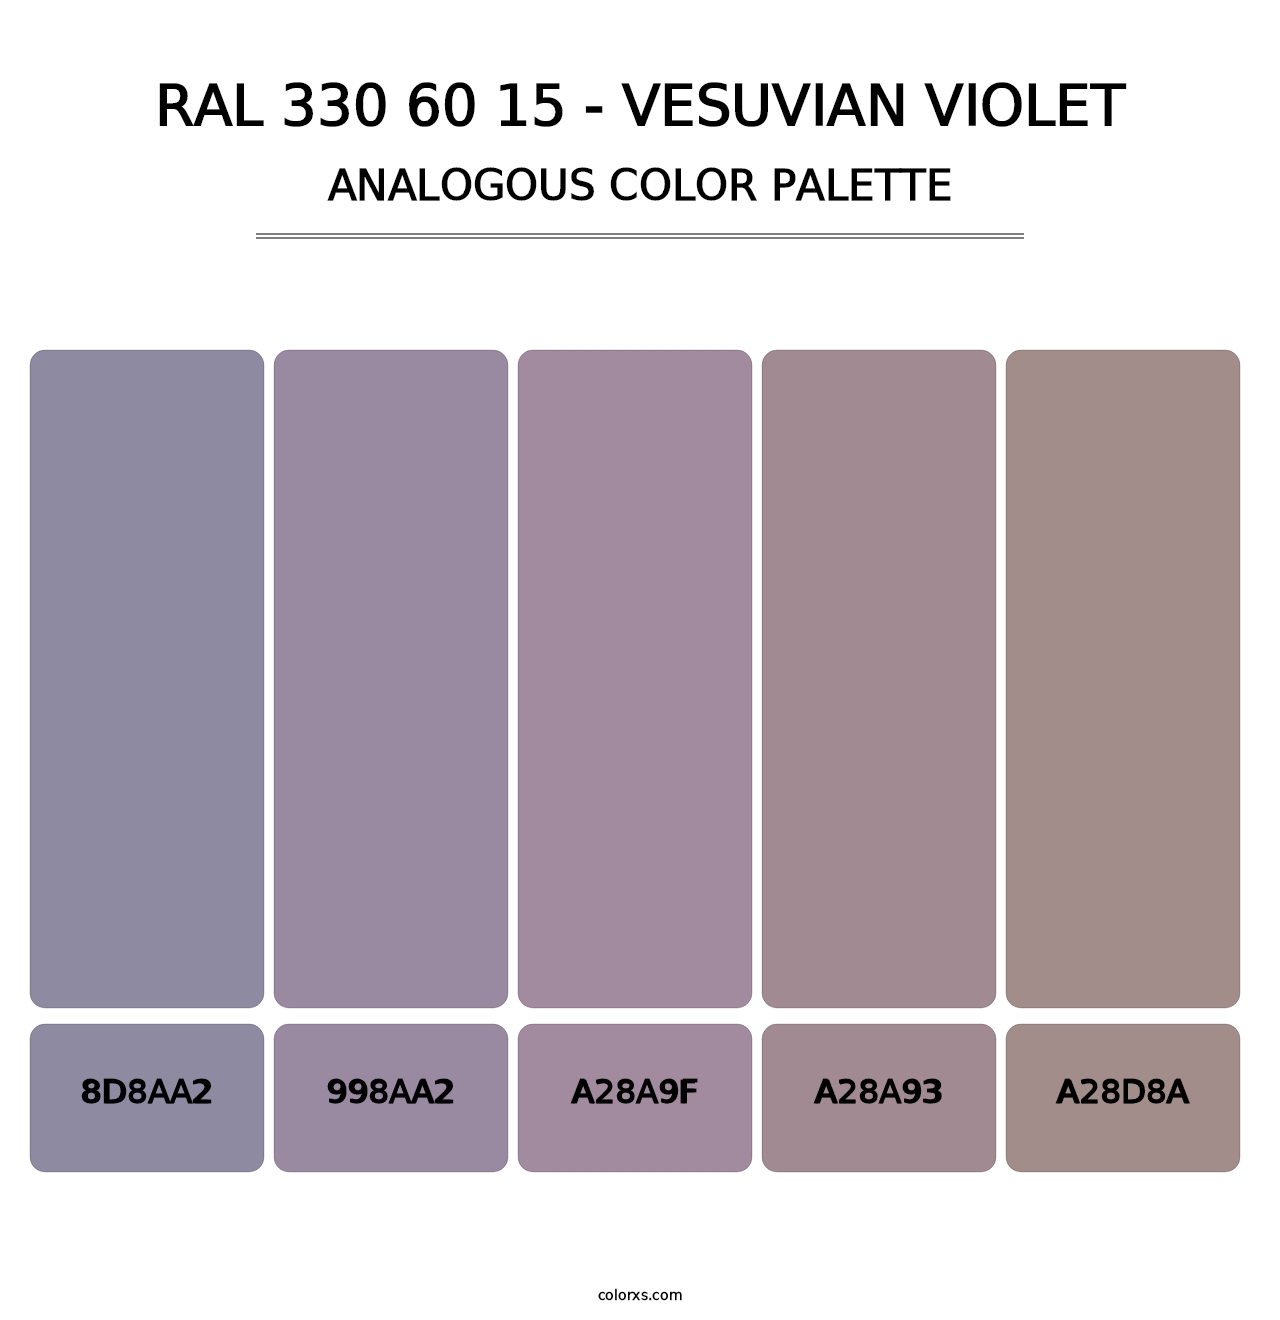 RAL 330 60 15 - Vesuvian Violet - Analogous Color Palette